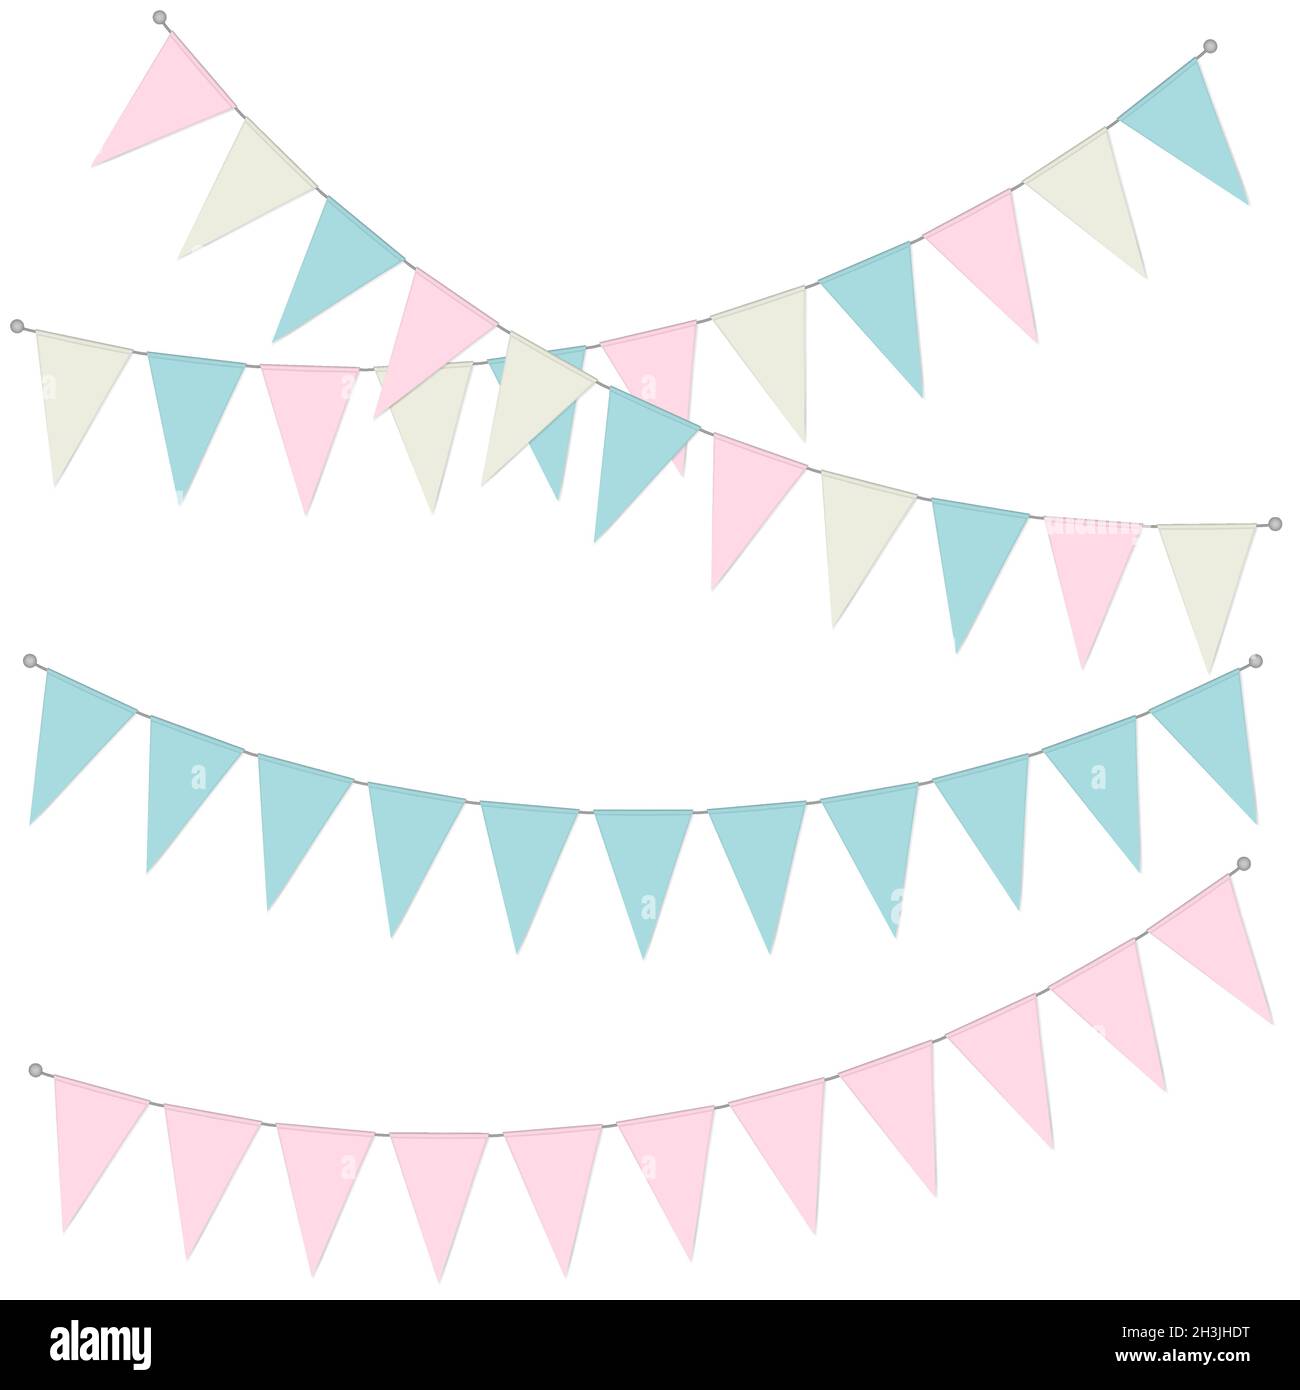 Ghirlanda di banner Pennant, illustrazione vettoriale. Bandiere triangolari sospese di colore pastello. Festa di conigliatura Illustrazione Vettoriale